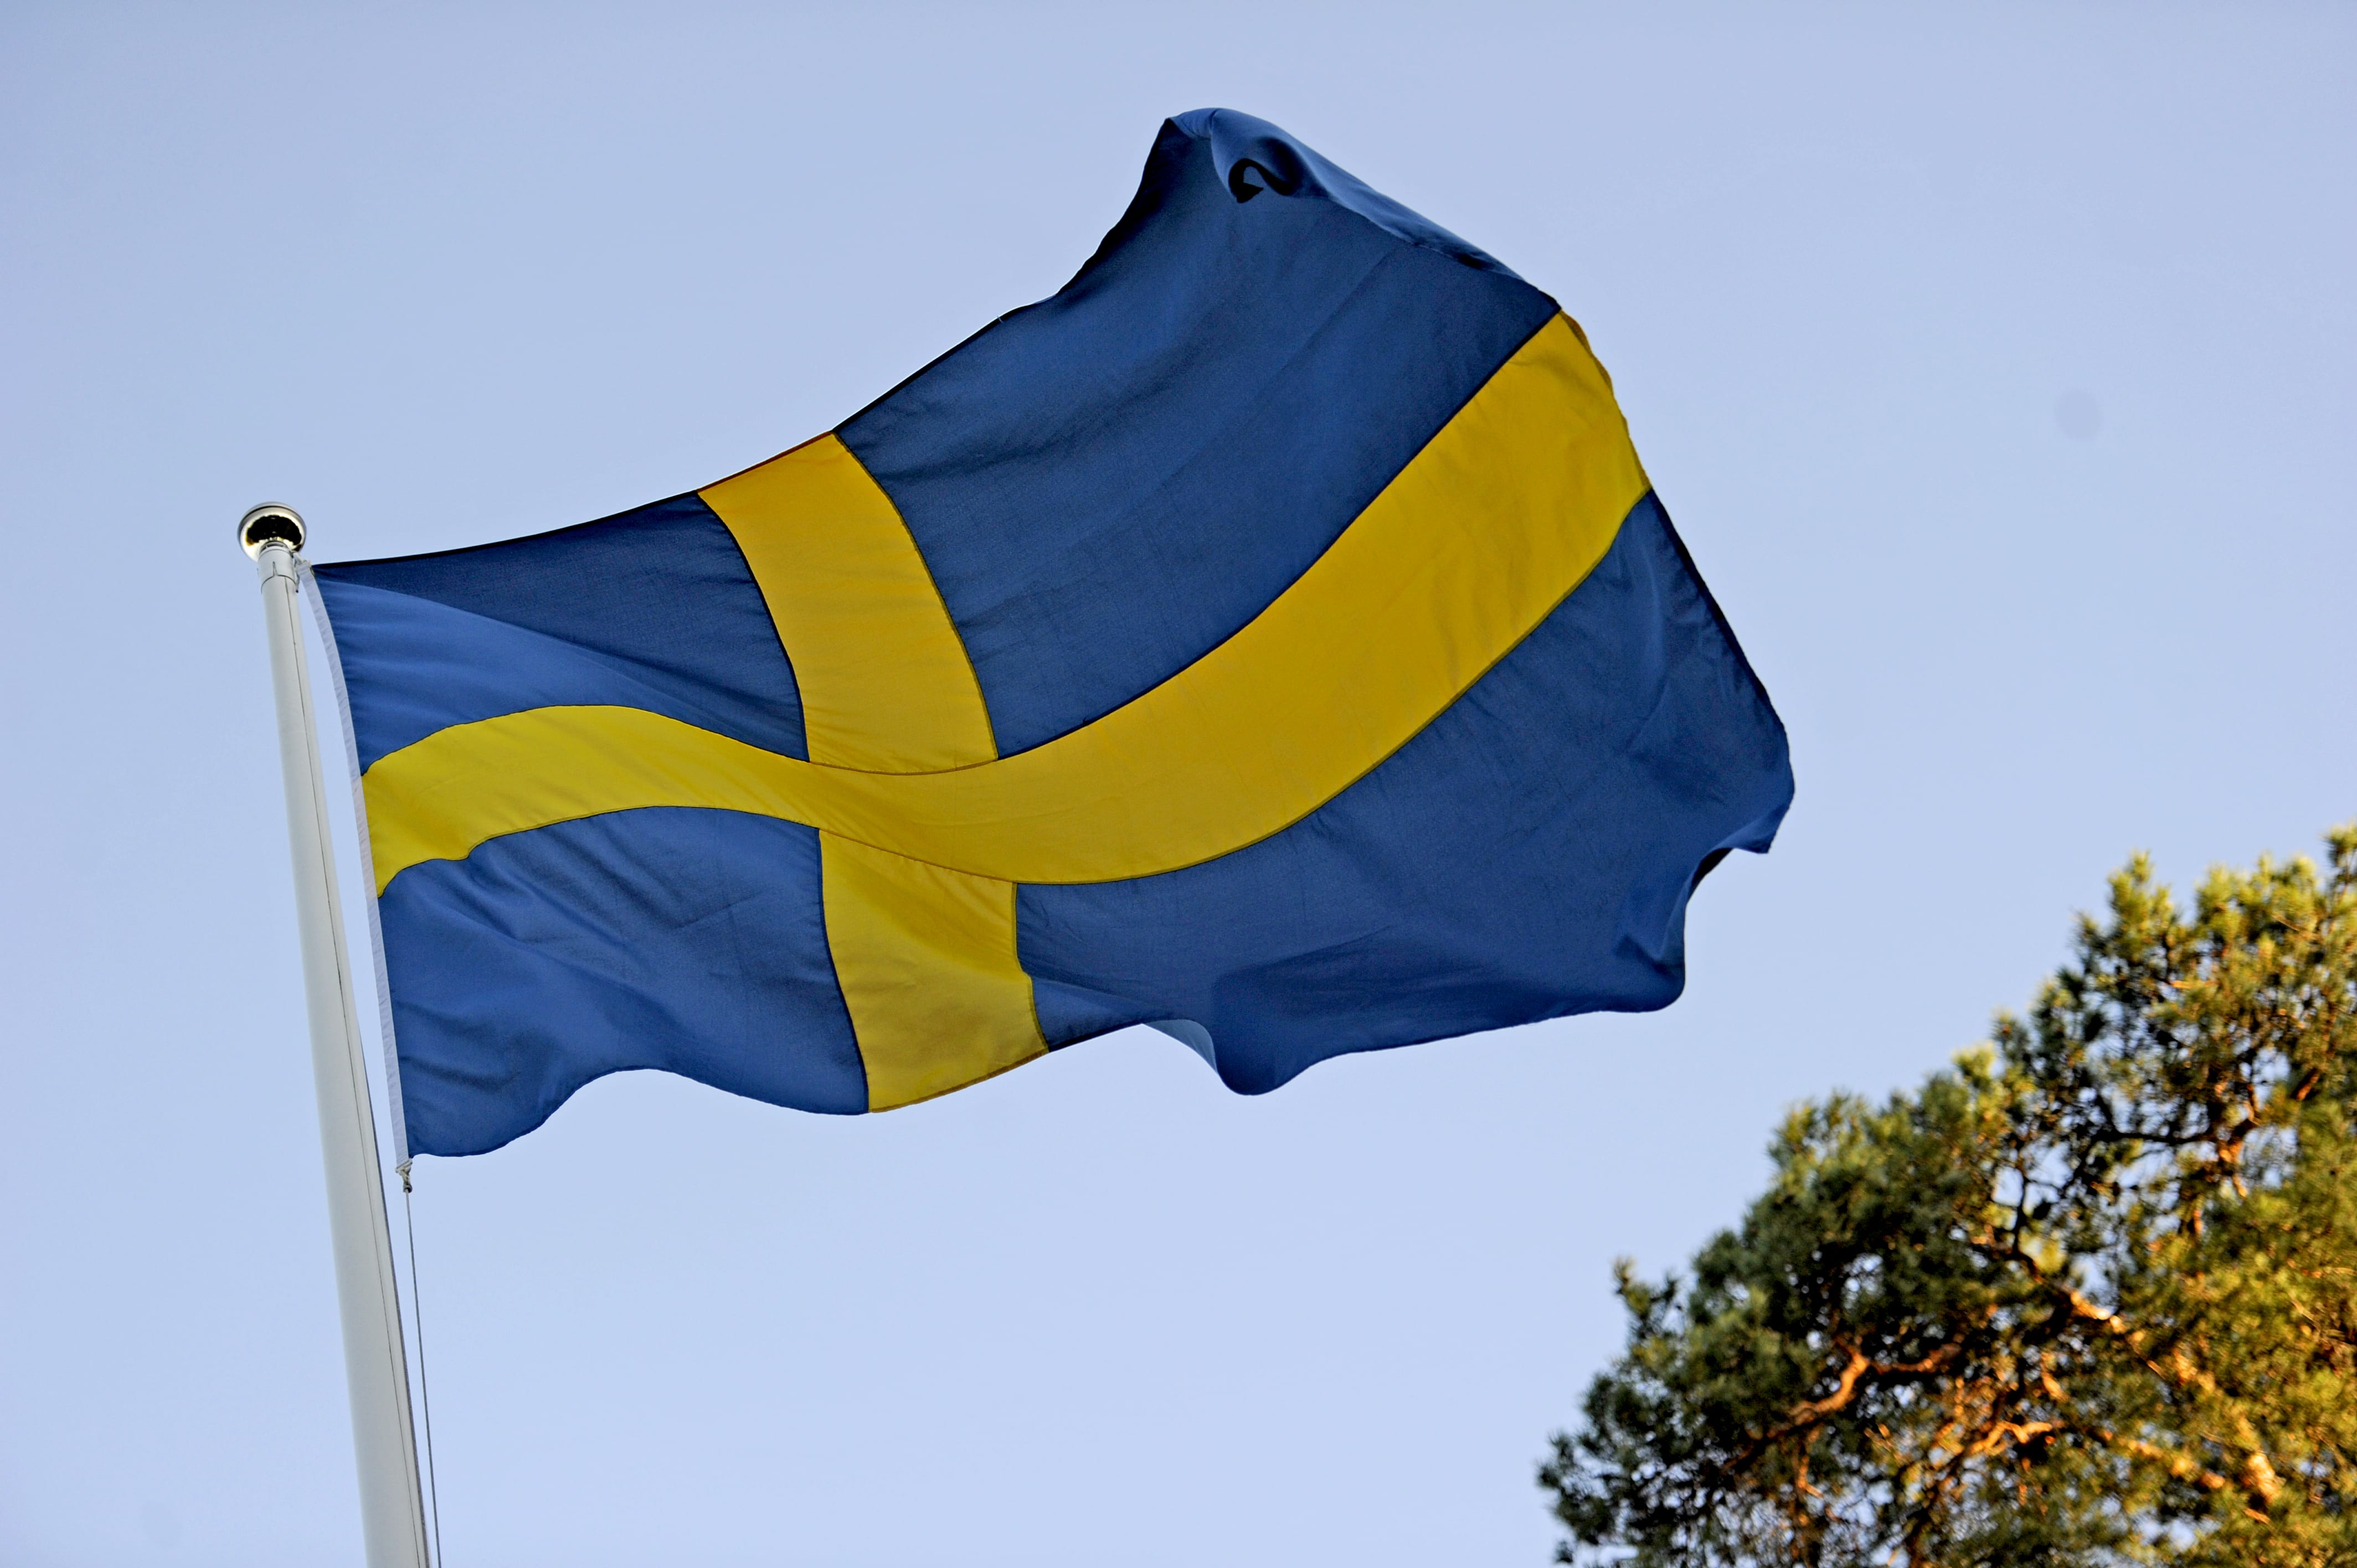 flagga sweden  svensk flagga  flag sweden  sweden flag  sweden flagga  flagga svensk  علم السويد  علم سويد (23)